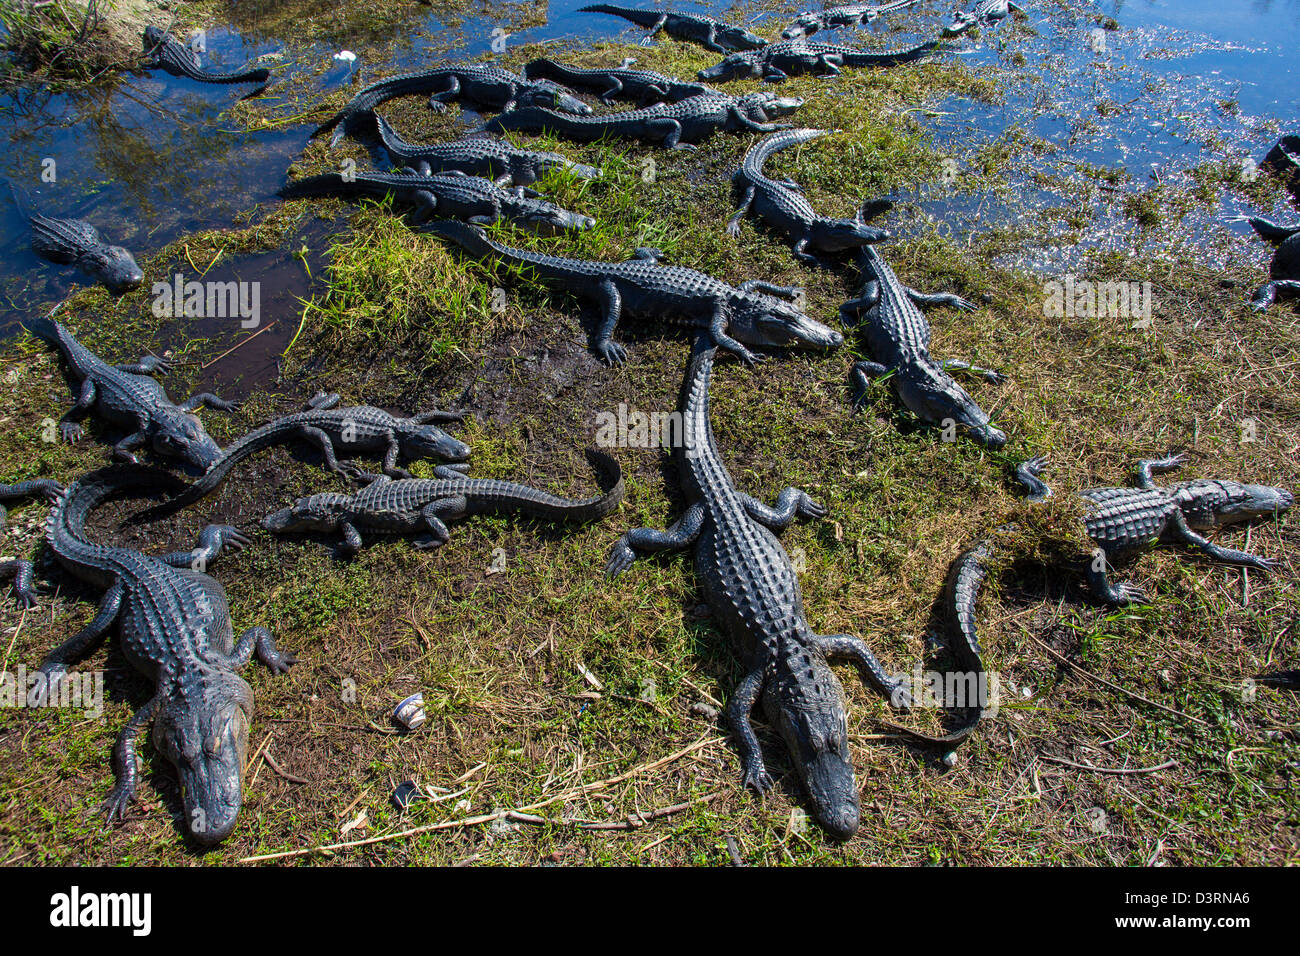 Le long du sentier des alligators Anhinga au Royal Palm Visitor Center dans le parc national des Everglades en Floride Banque D'Images